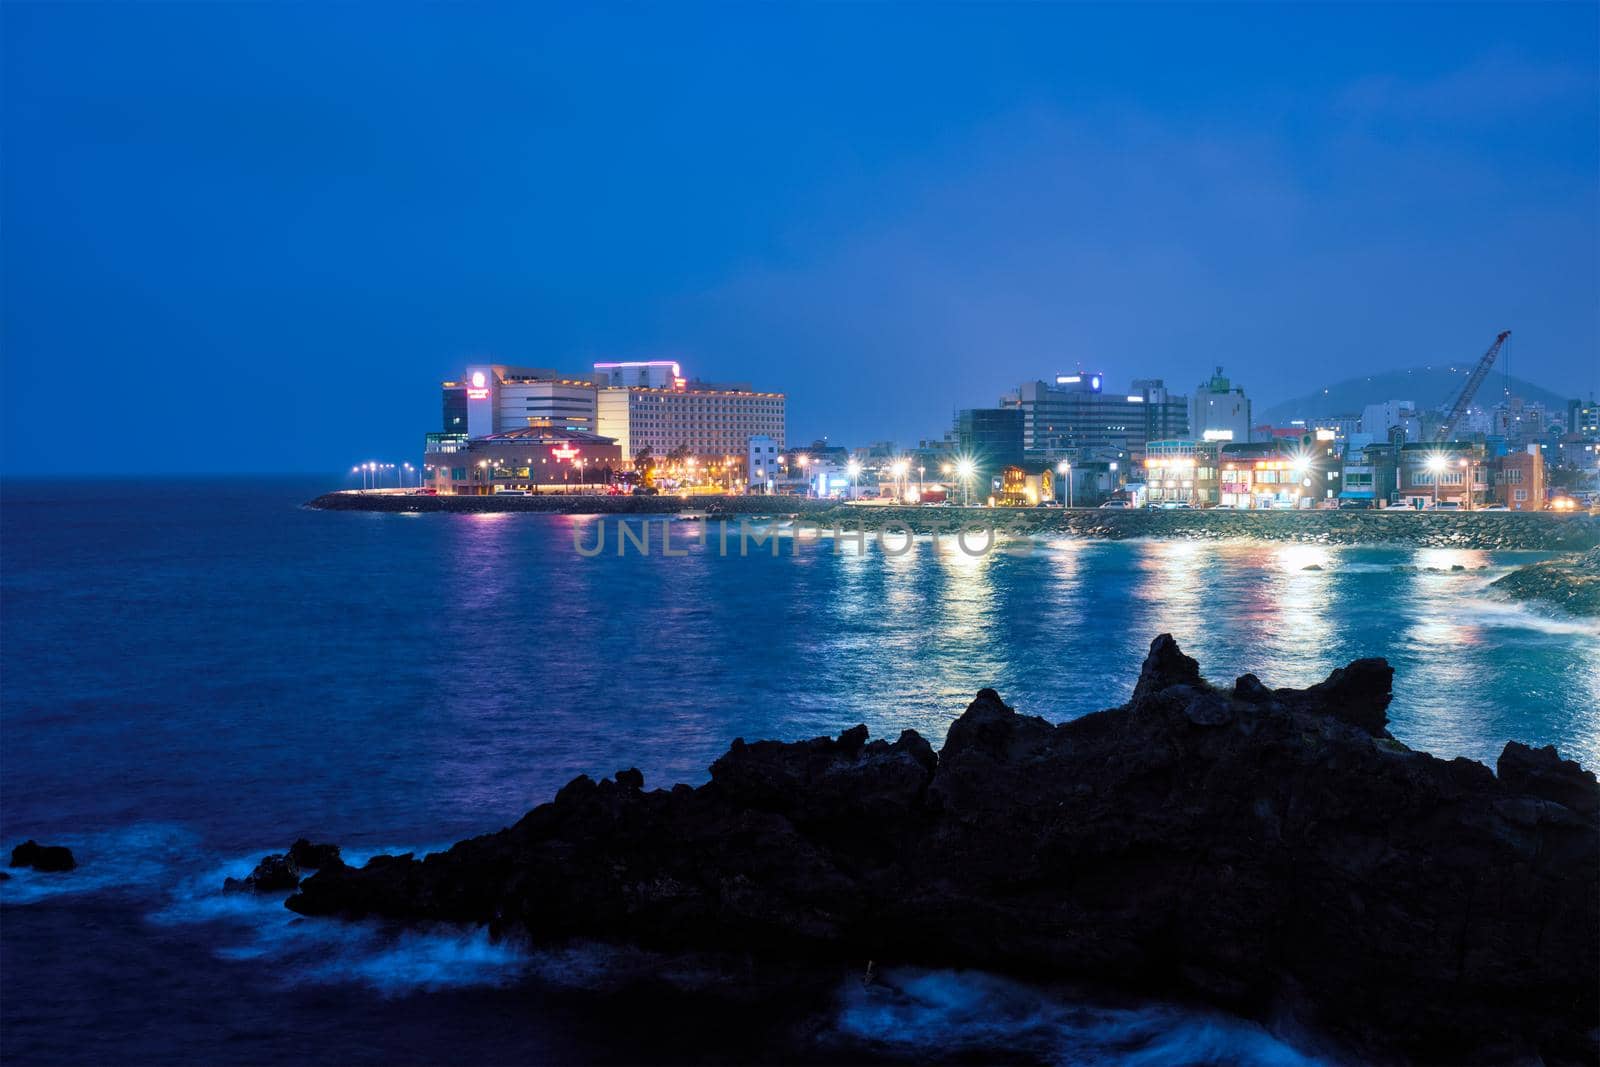 Jeju resort town illuminated in night, Jeju island, South Korea